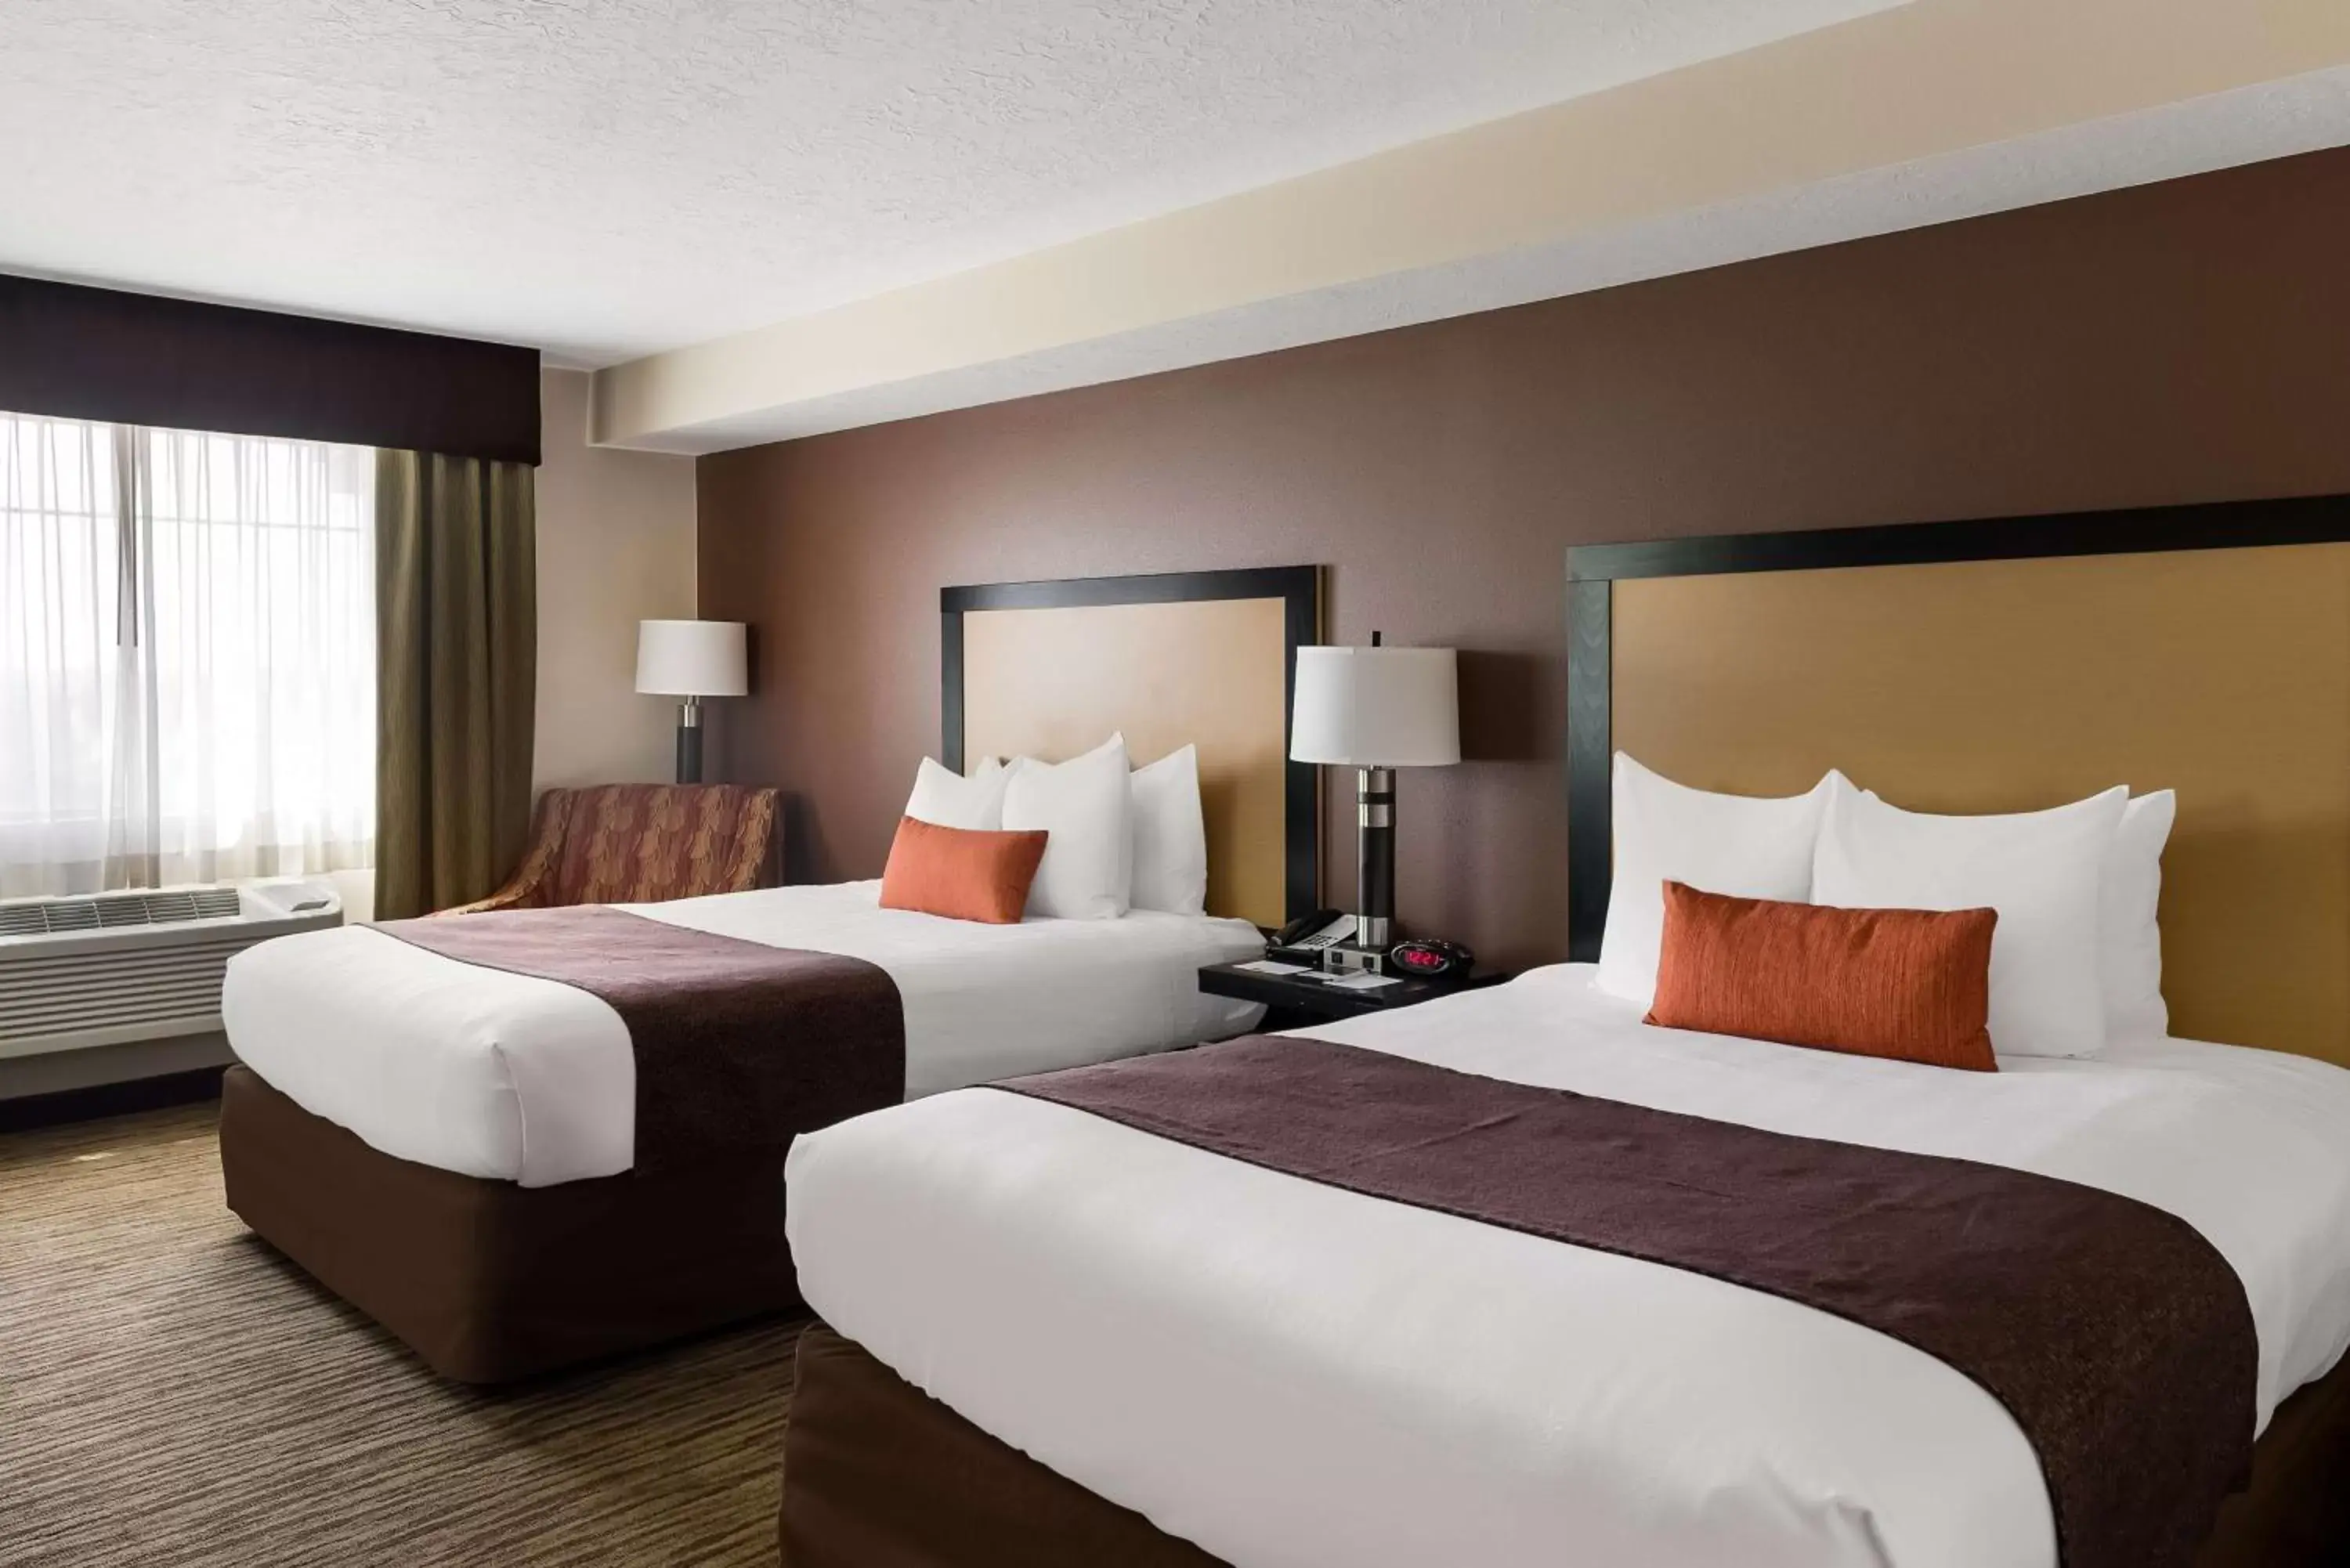 Bedroom, Bed in Best Western Plus Landmark Hotel